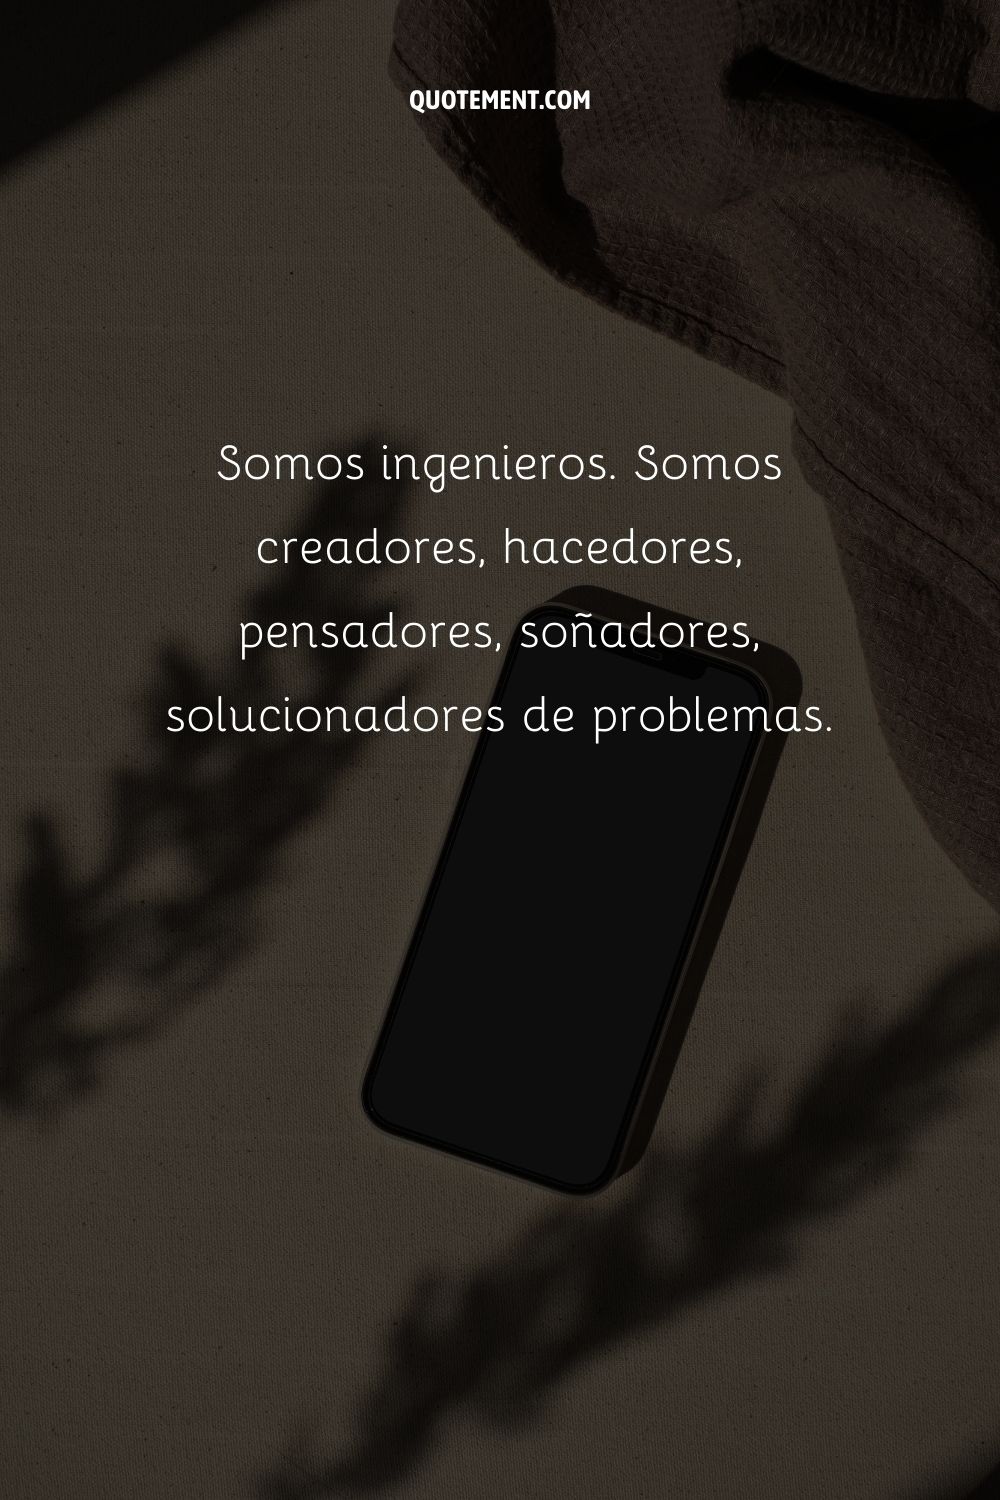 Somos ingenieros. Somos creadores, hacedores, pensadores, soñadores, solucionadores de problemas.